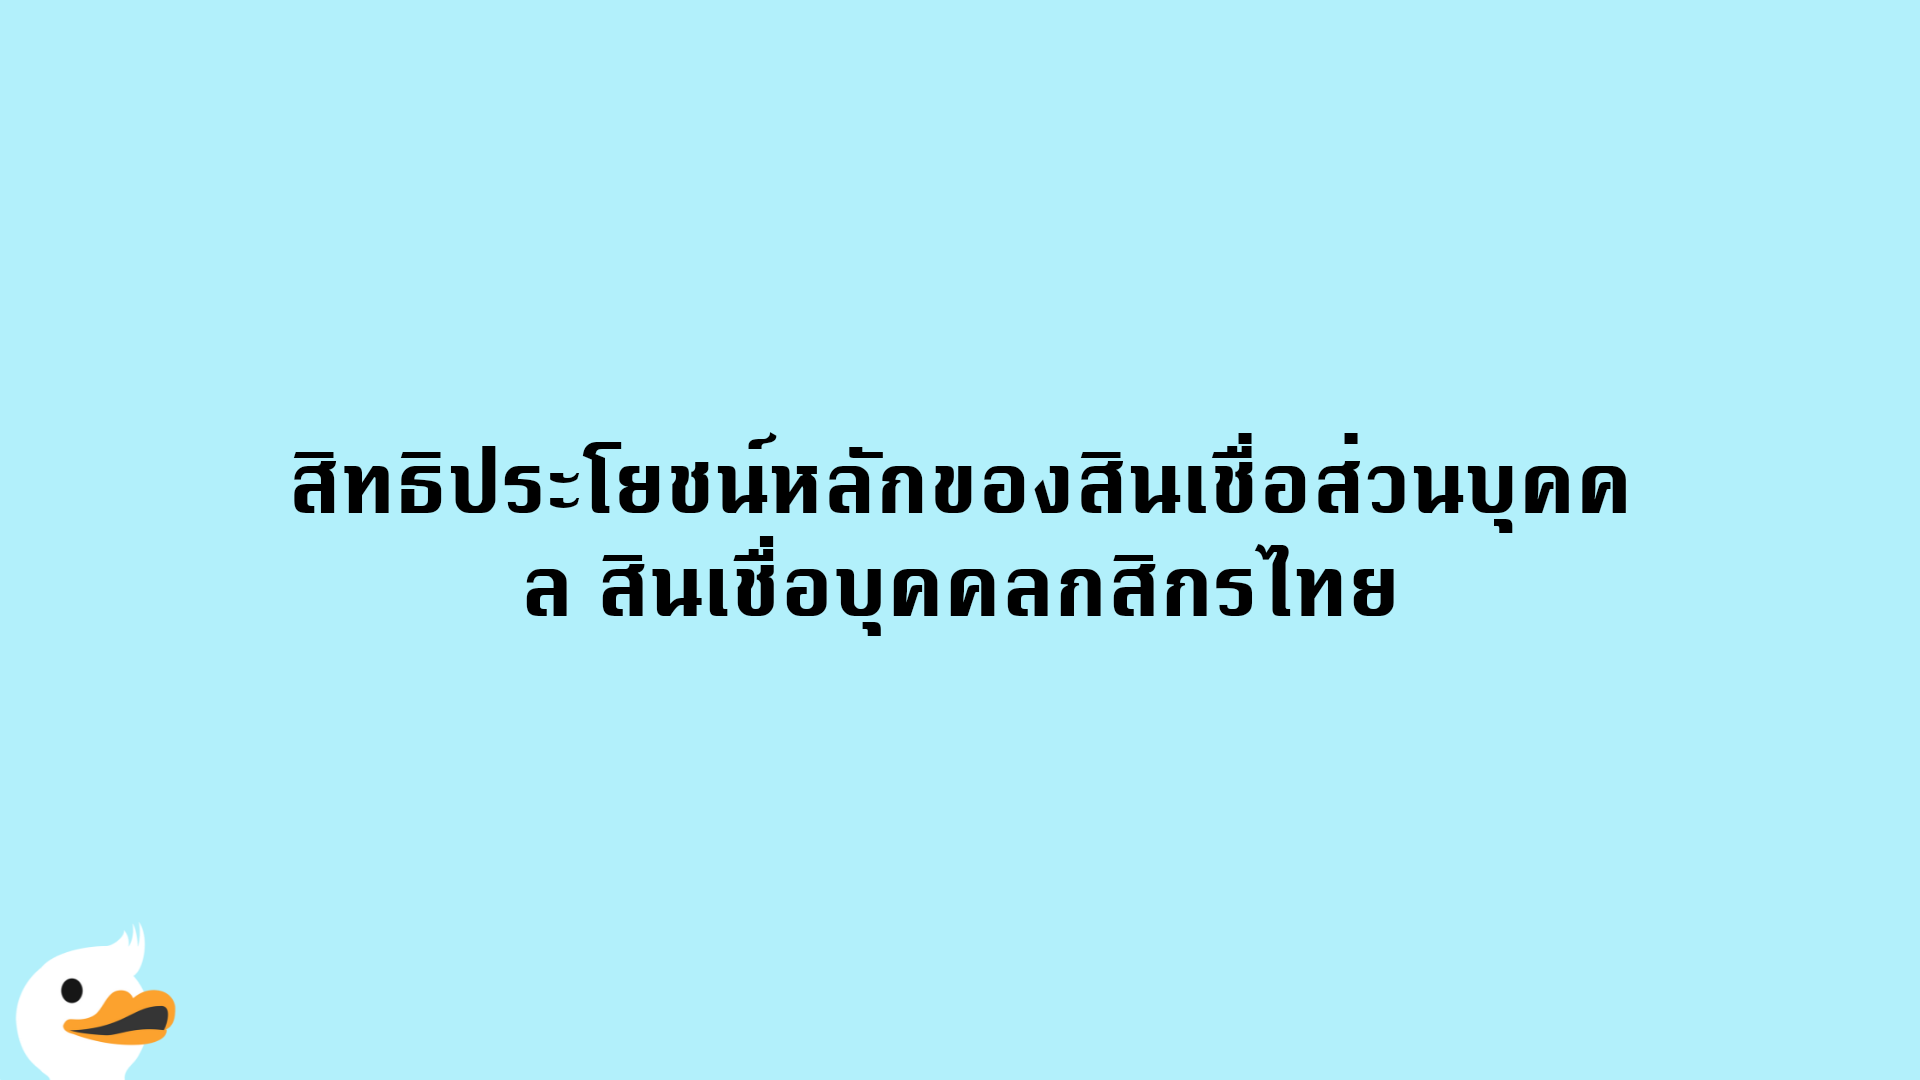 สิทธิประโยชน์หลักของสินเชื่อส่วนบุคคล สินเชื่อบุคคลกสิกรไทย